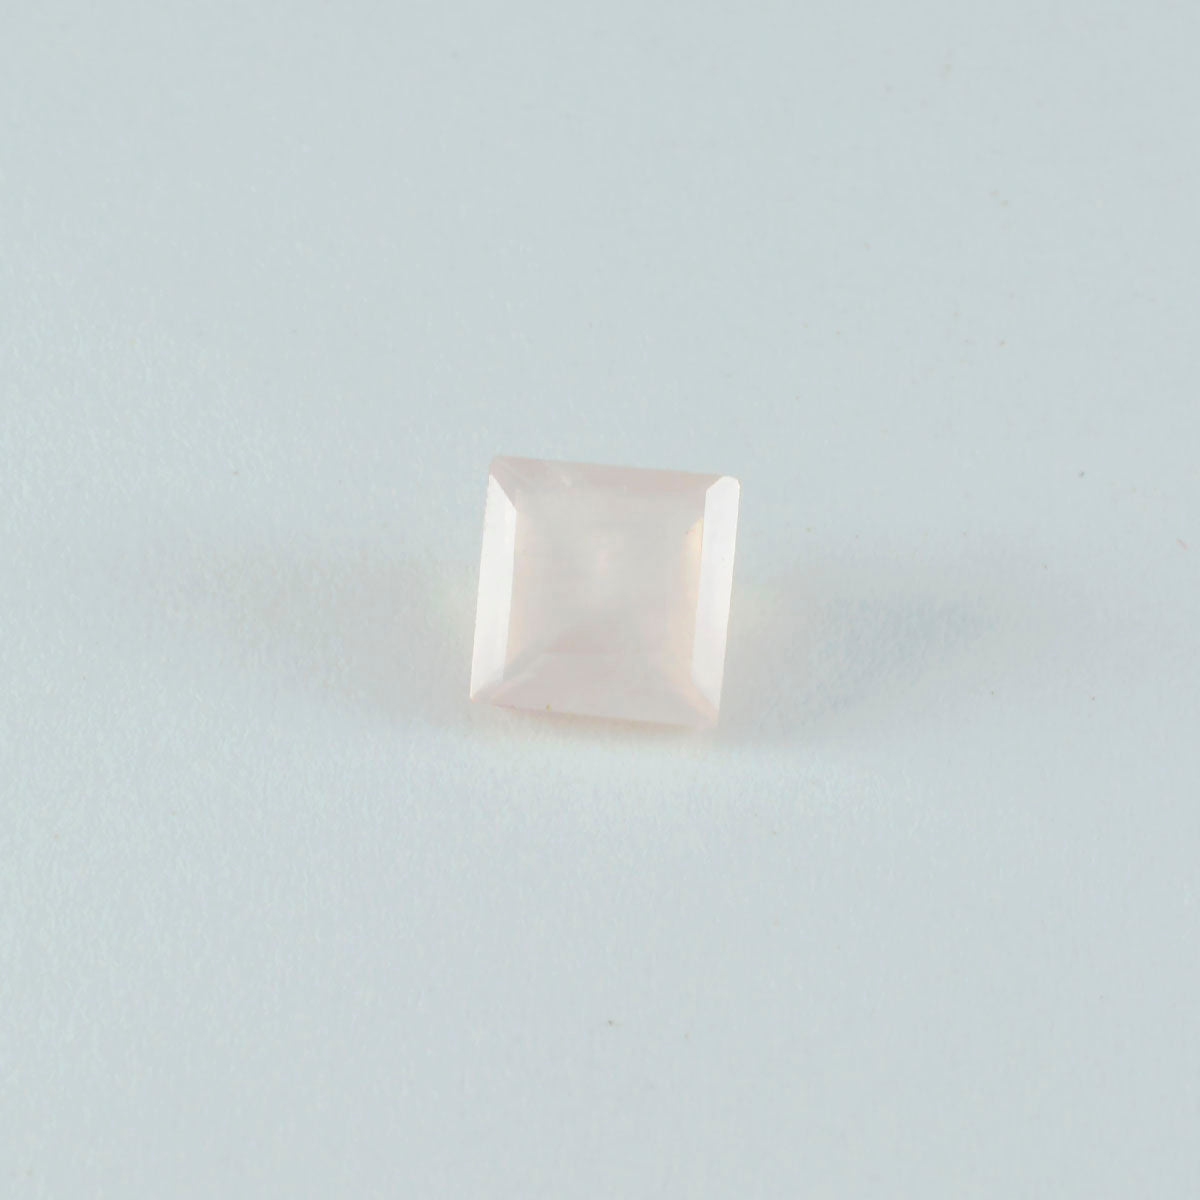 Riyogems 1pc quartz rose à facettes 11x11mm forme carrée merveilleuse qualité pierres précieuses en vrac